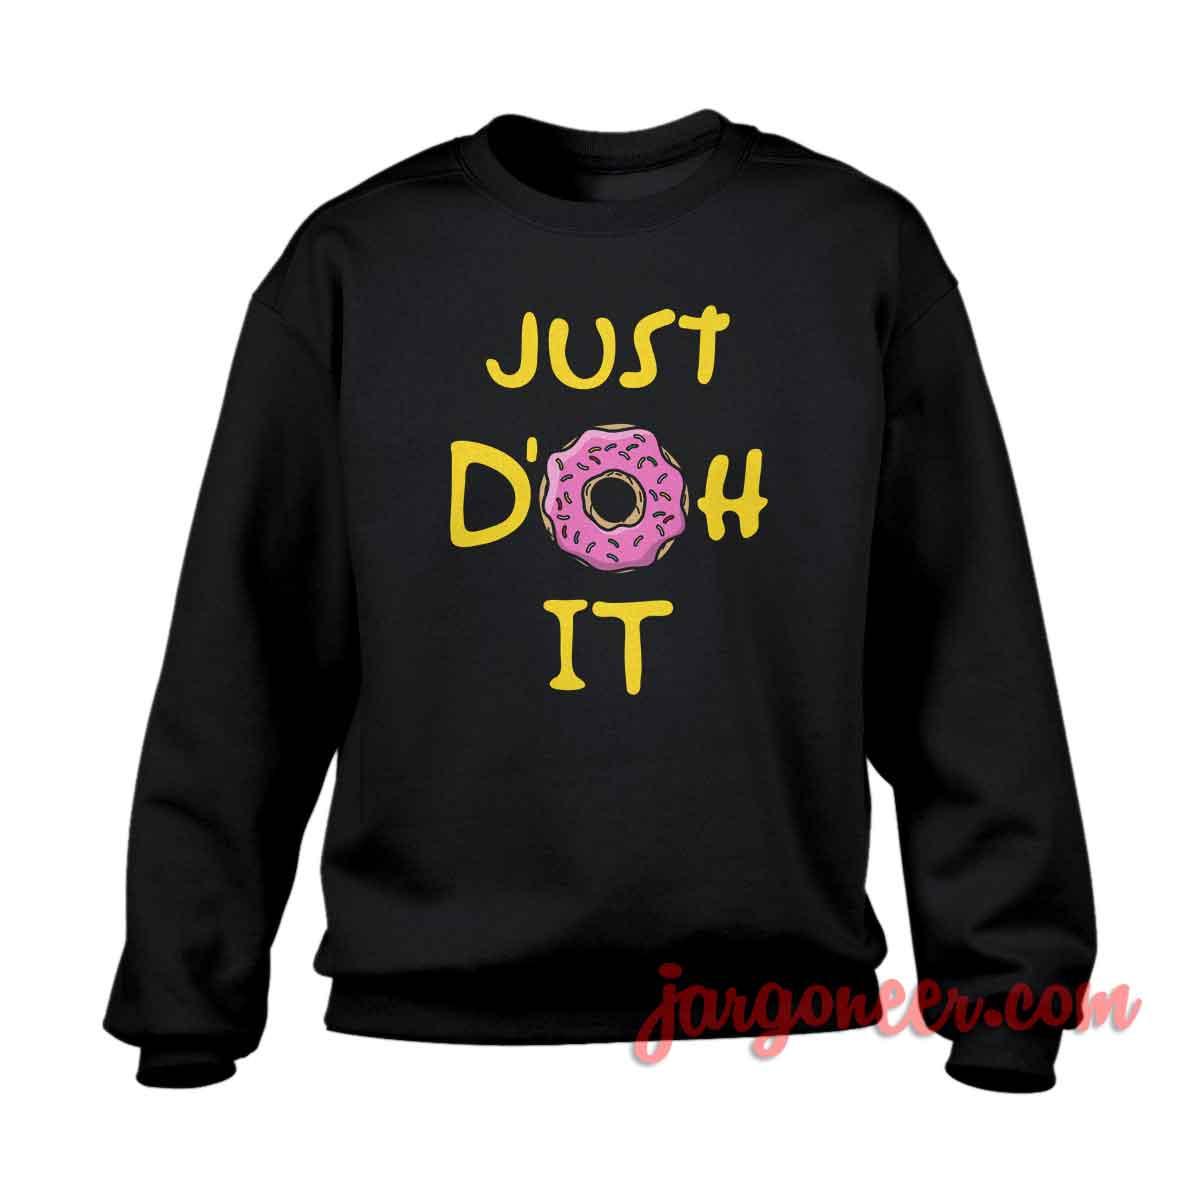 Just Donut It - Shop Unique Graphic Cool Shirt Designs